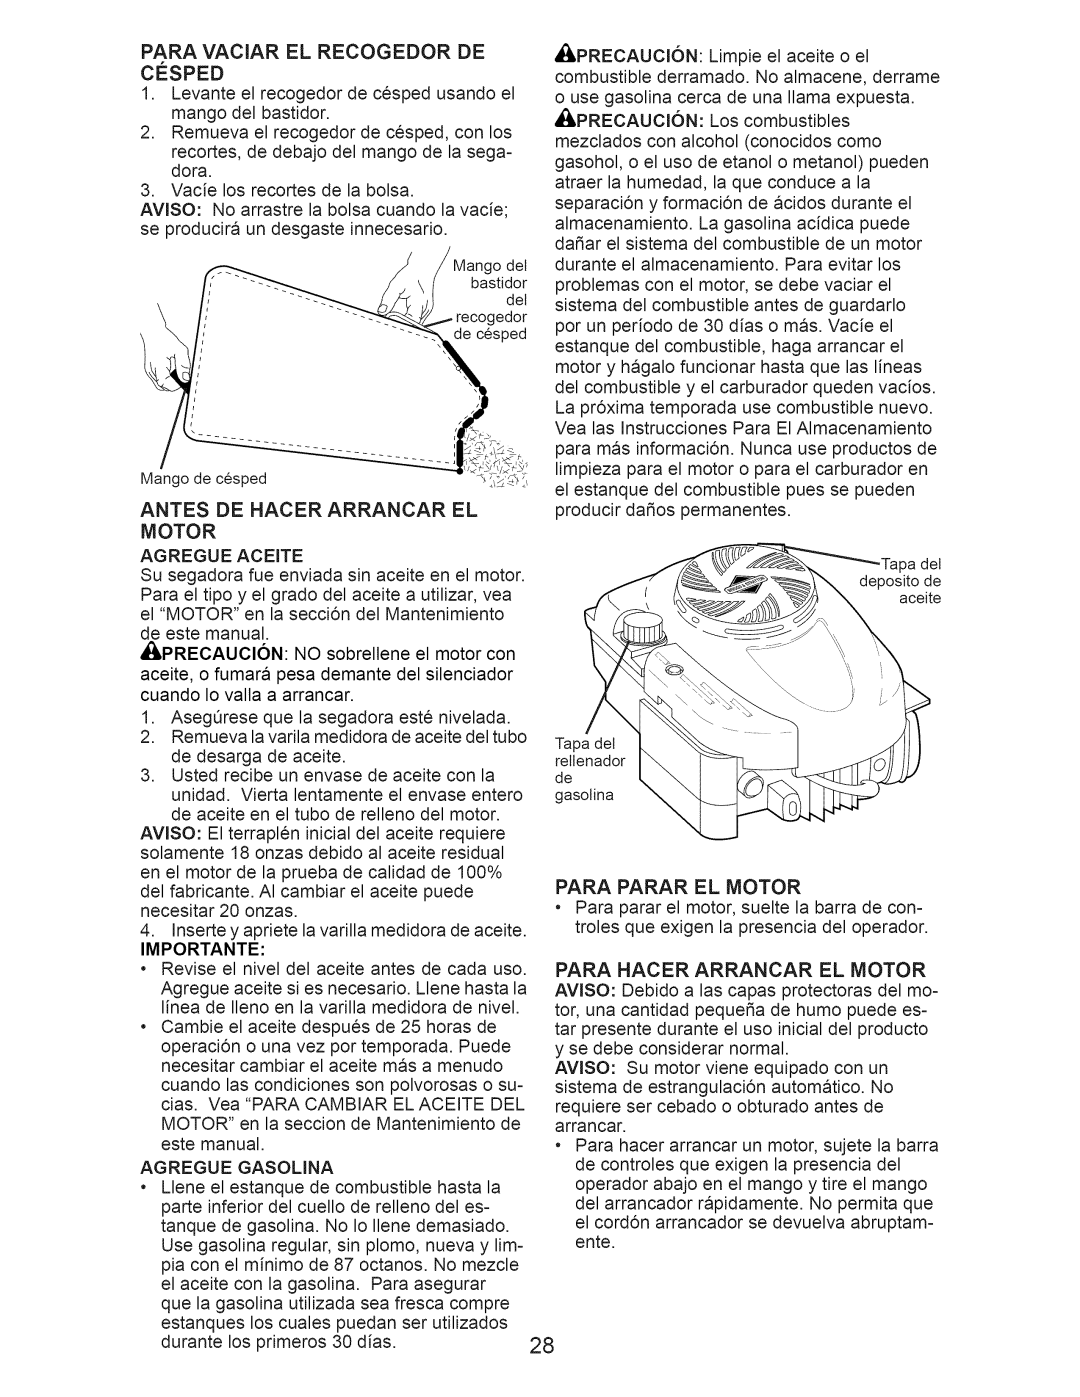 Craftsman 917.376392 manual Antes De Hacer Arrancar El Motor, Para Parar El Motor, Importante 